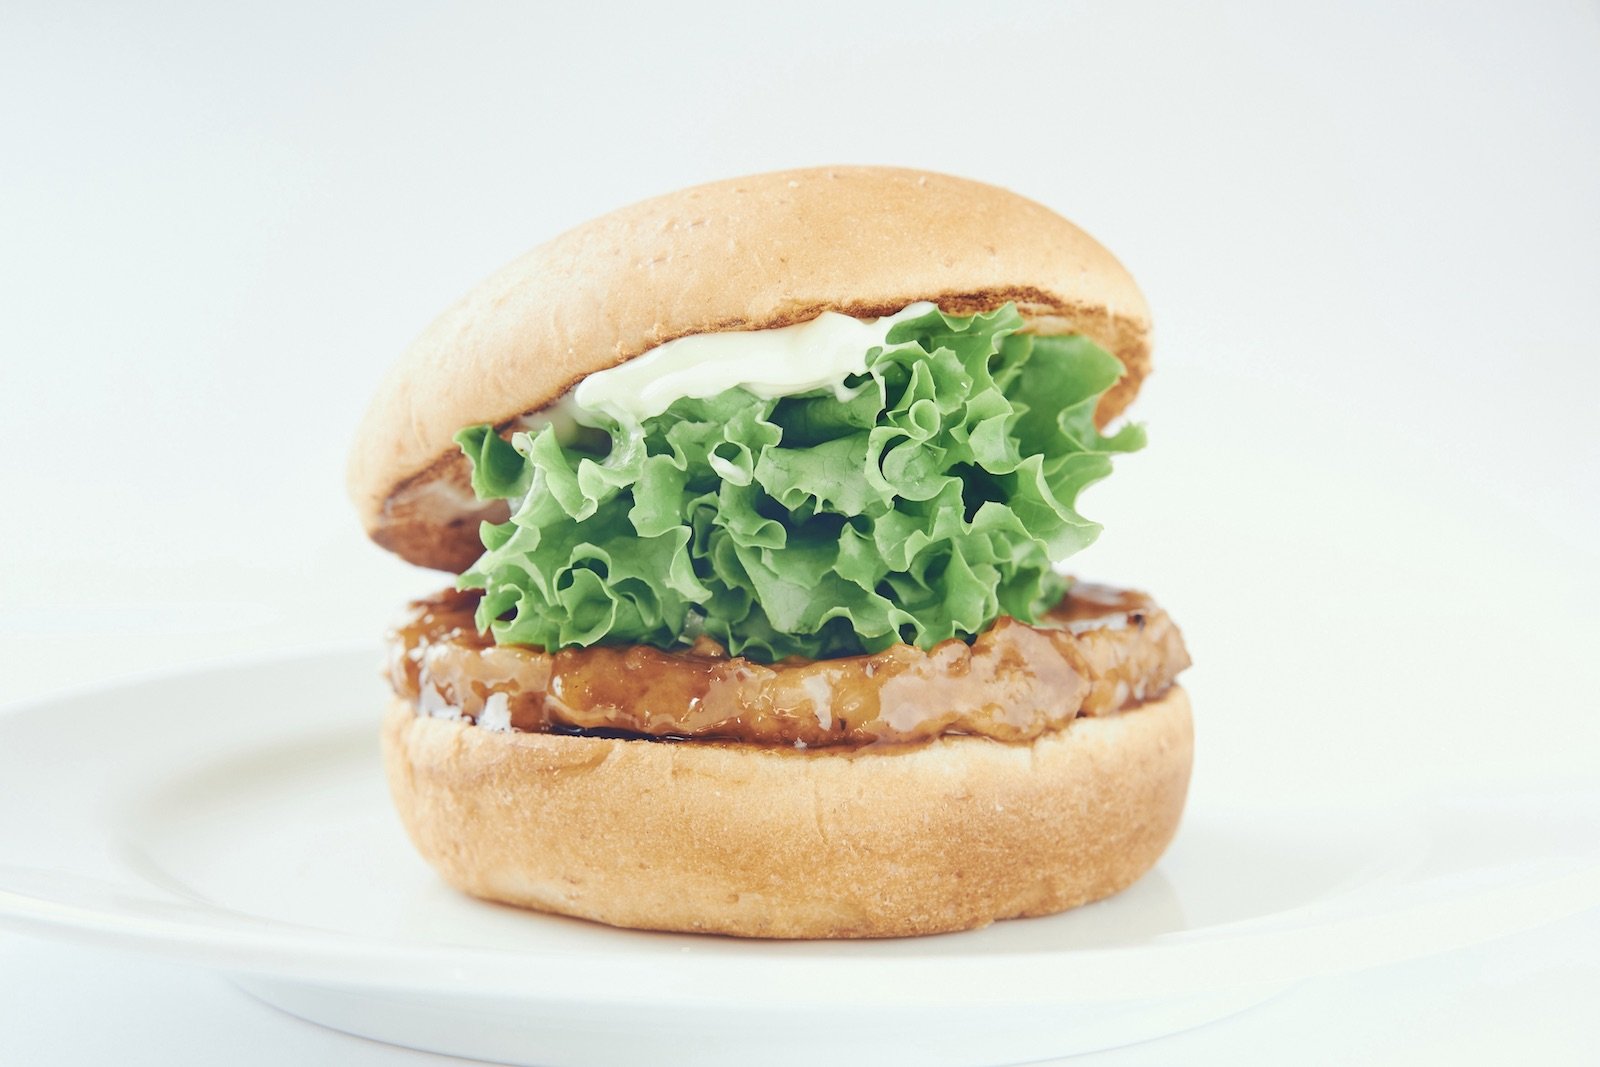 フレッシュネスの新作バーガーに日本発“大豆由来”の代替肉が採用されたワケ